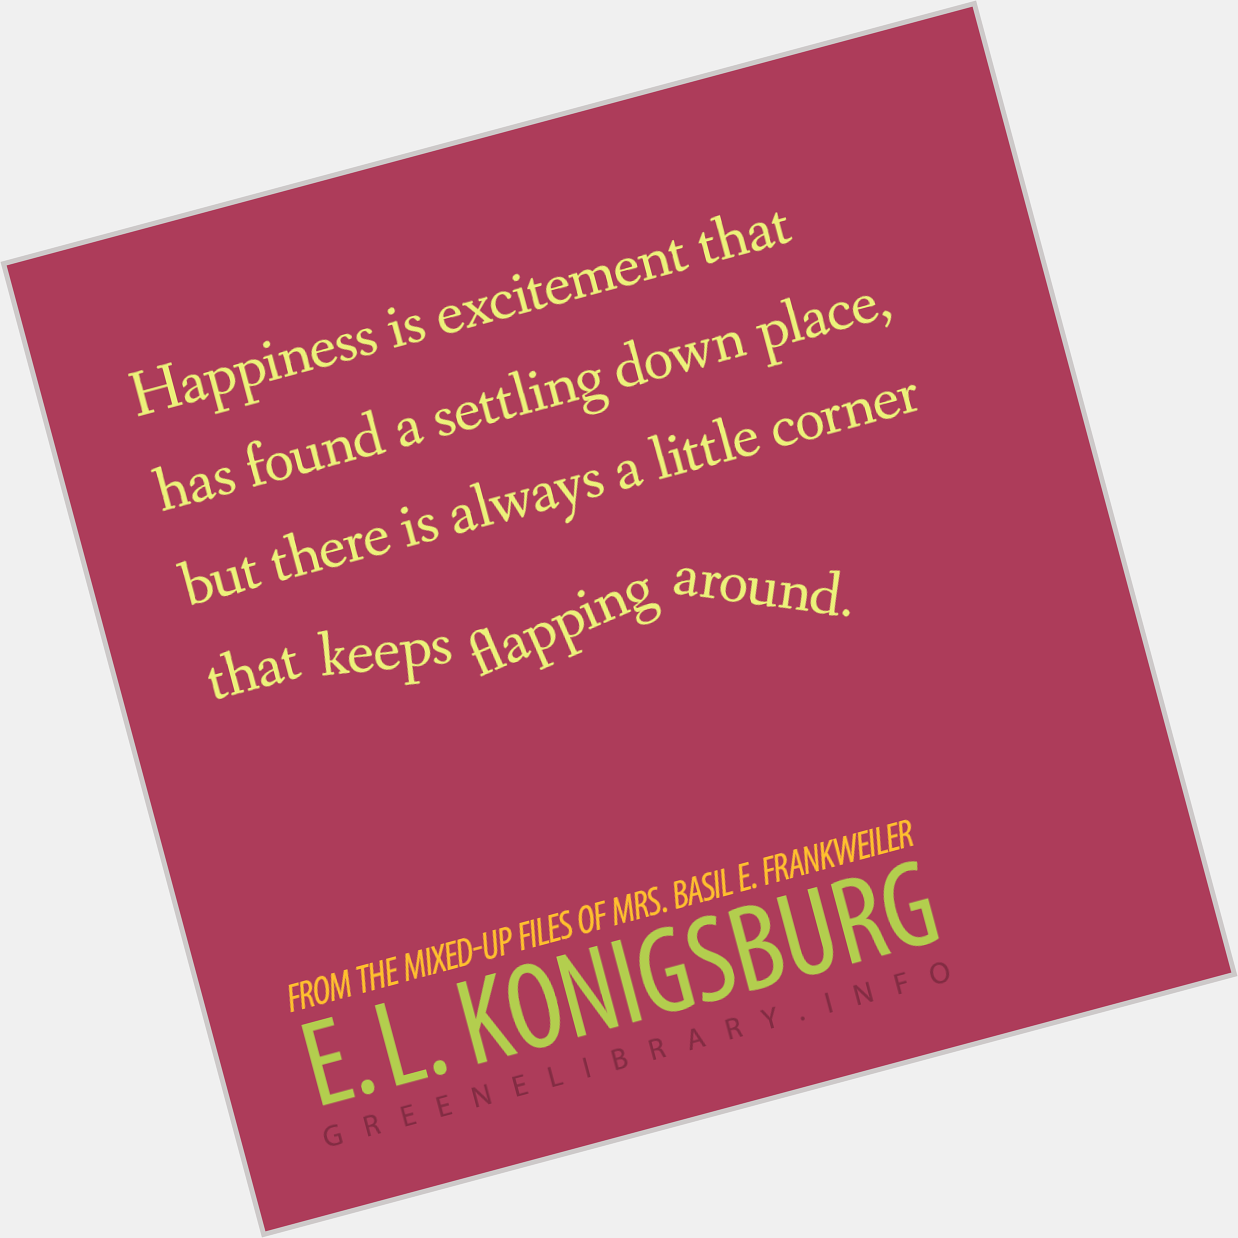 Happy birthday to author E.L. Konigsburg.  